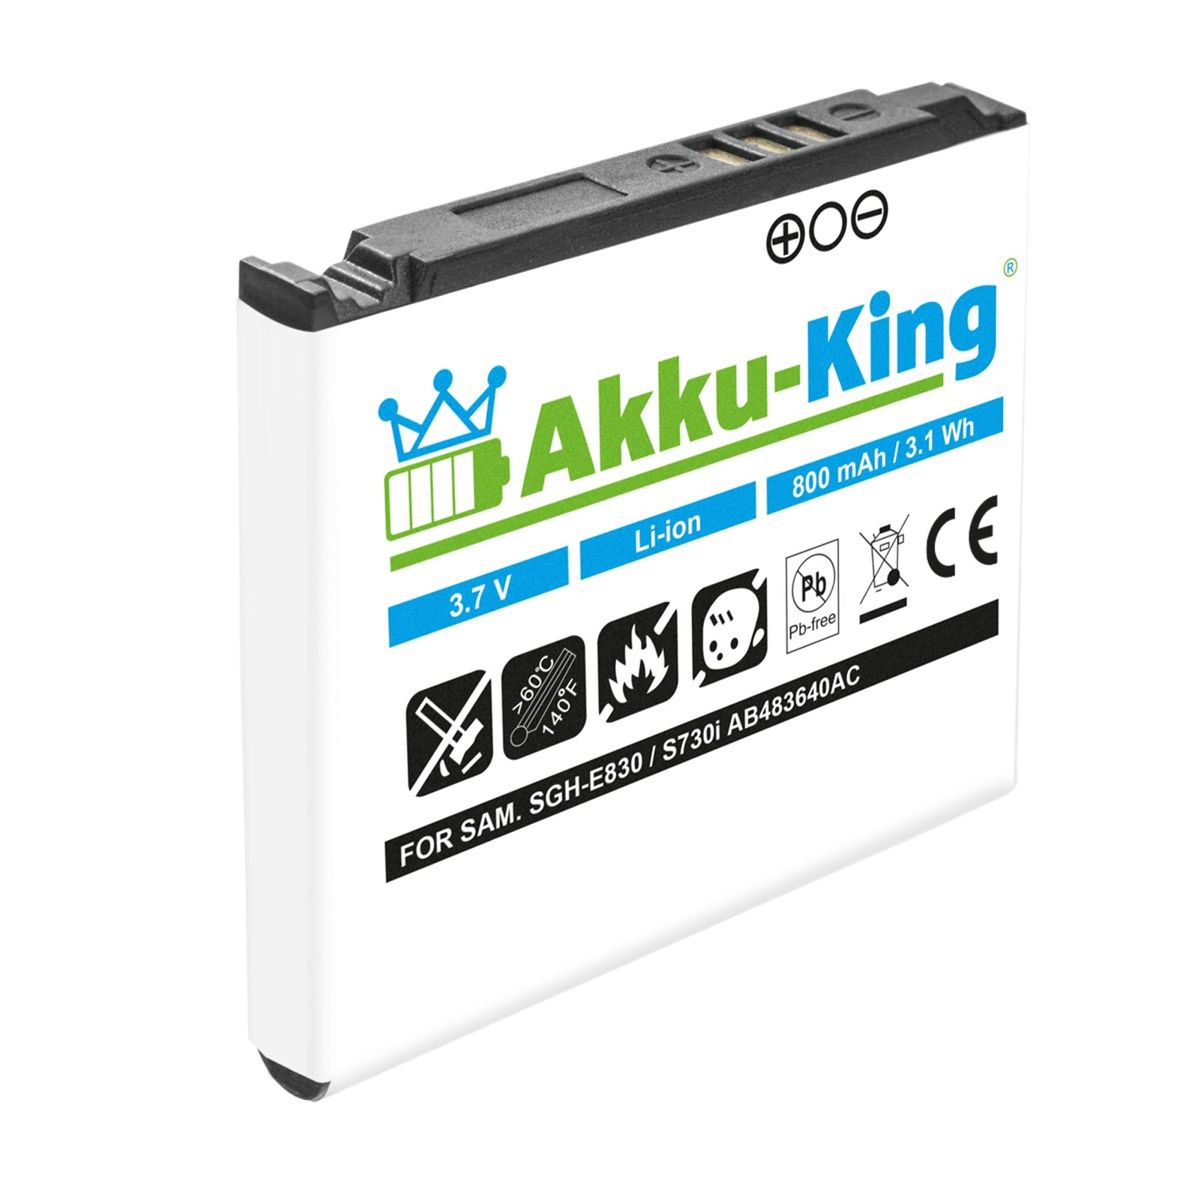 Akku Volt, mit Li-Ion kompatibel 800mAh Handy-Akku, 3.7 Samsung AKKU-KING AB483640AE